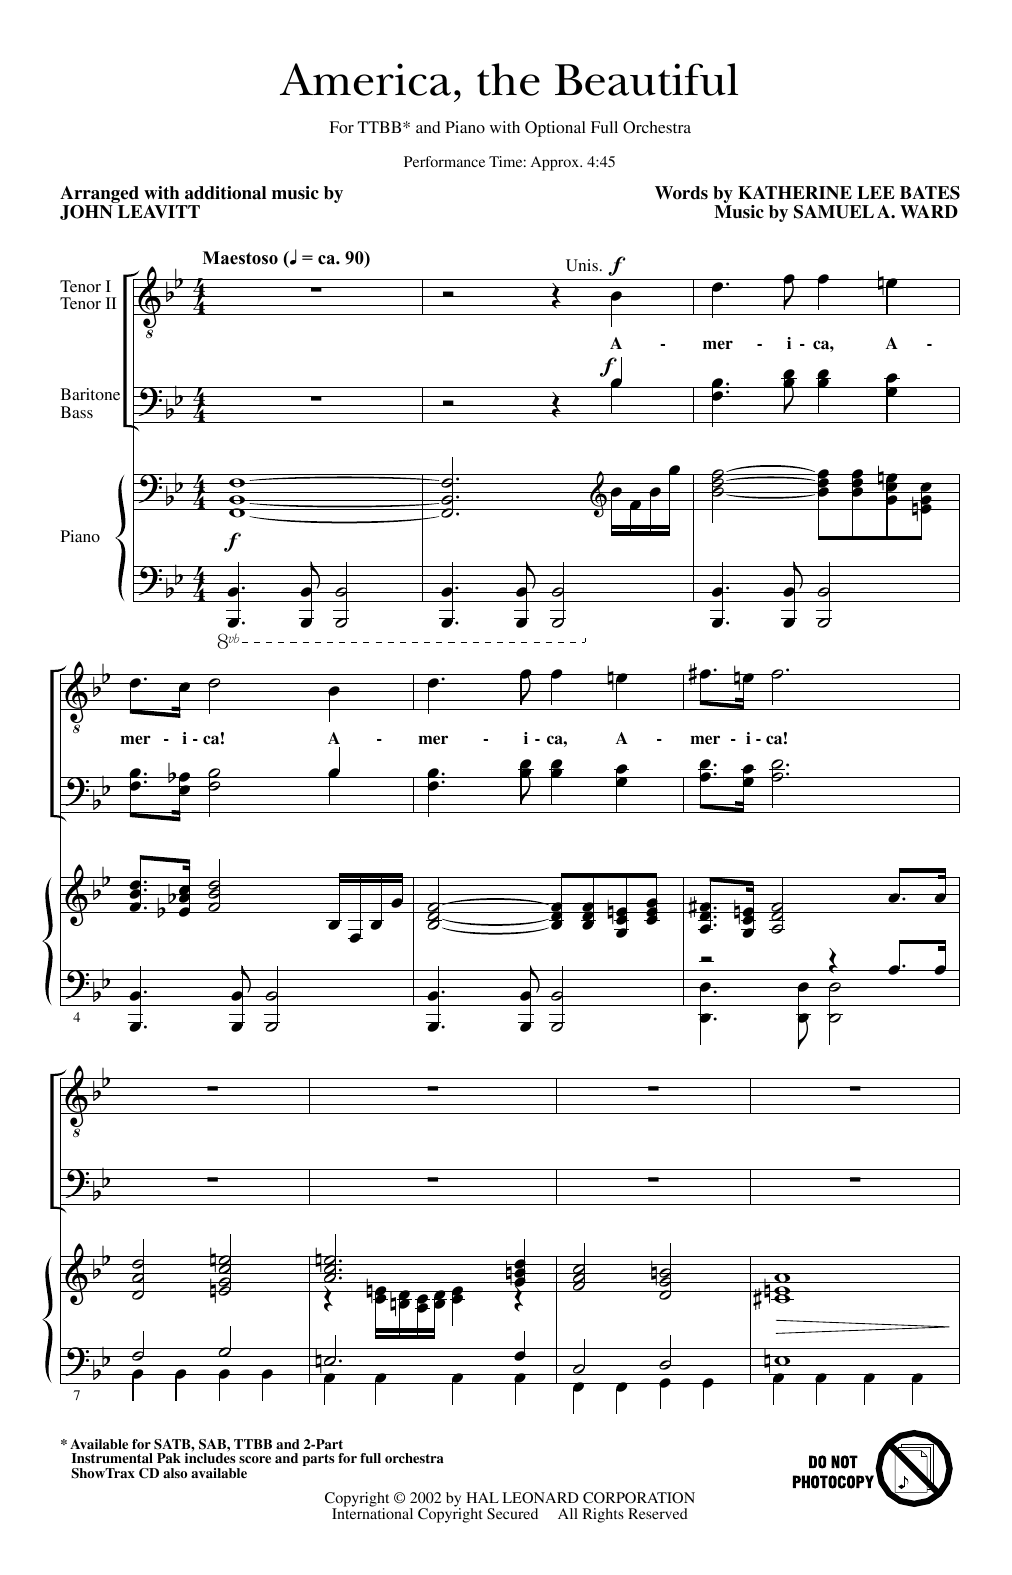 America, The Beautiful (arr. John Leavitt) (TTBB Choir) von Samuel A. Ward